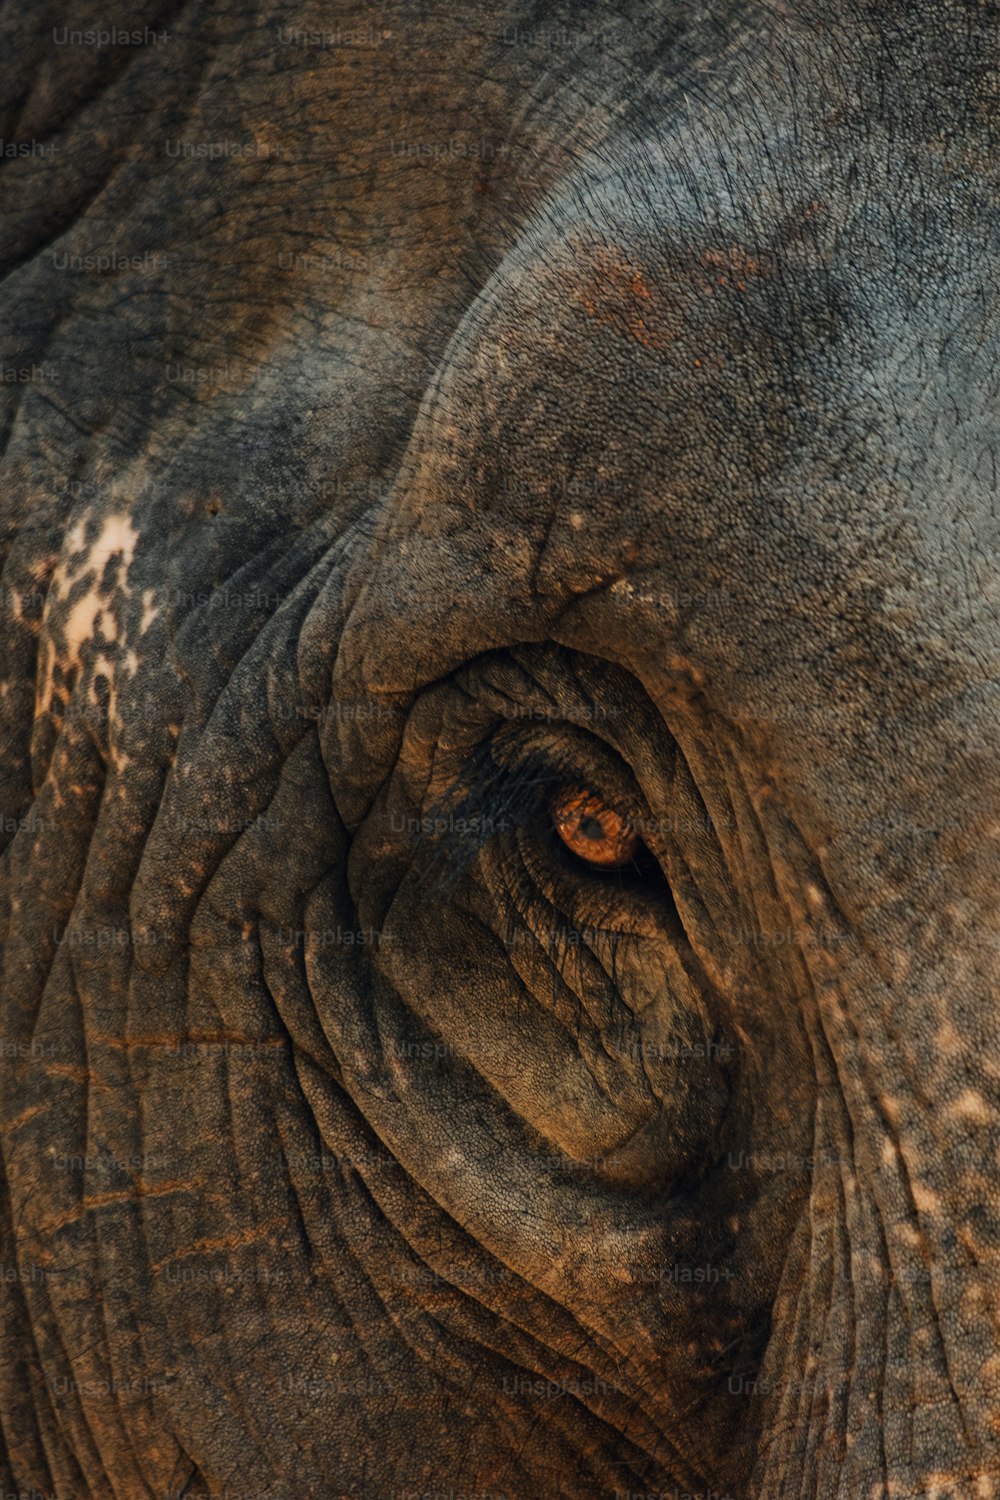 Un primer plano del ojo de un elefante con arrugas